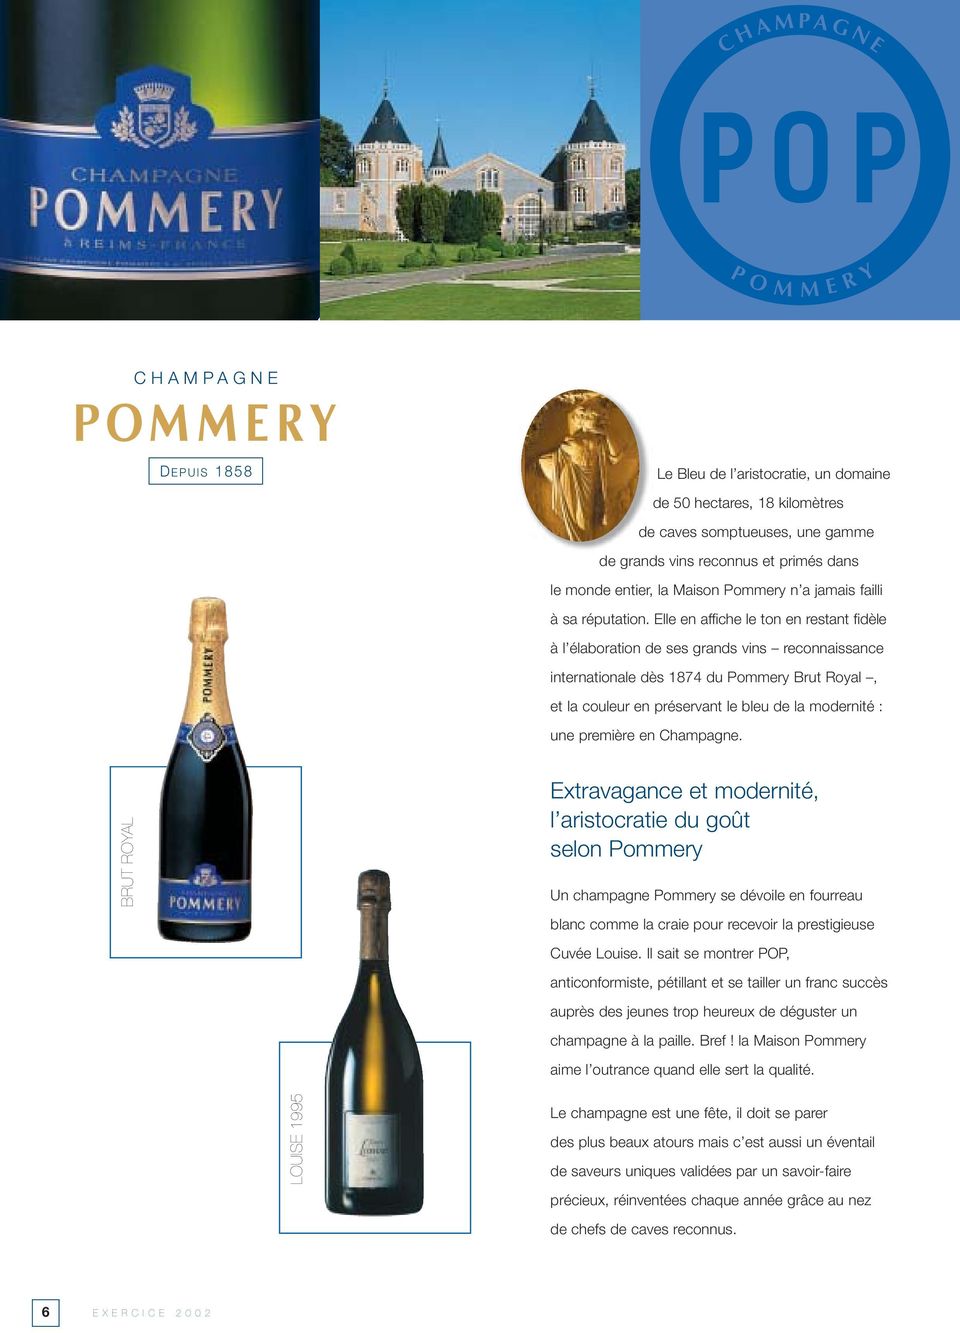 Elle en affiche le ton en restant fidèle à l élaboration de ses grands vins reconnaissance internationale dès 1874 du Pommery Brut Royal, et la couleur en préservant le bleu de la modernité : une